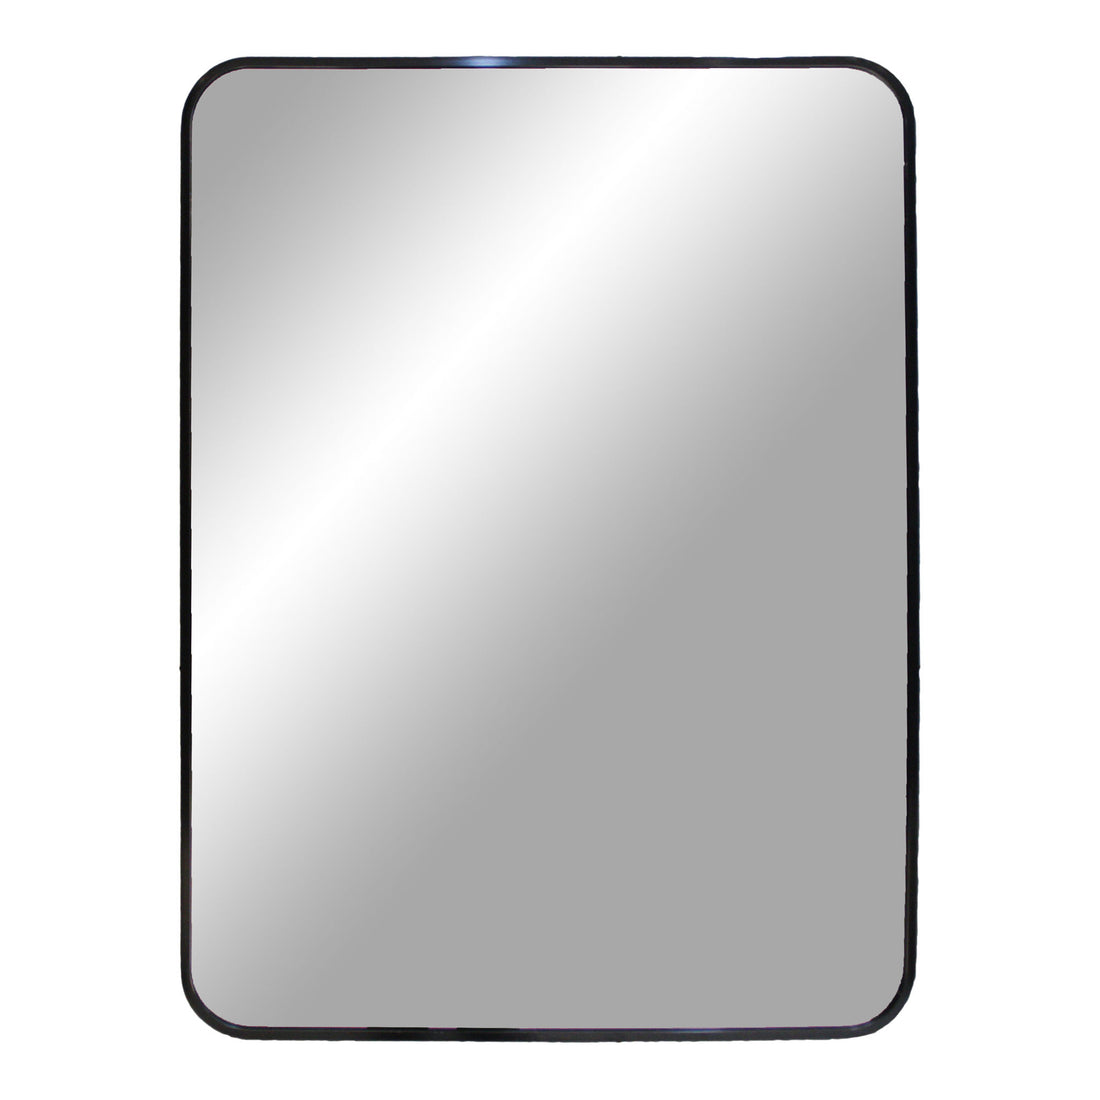 Madrid mirror - mirror in aluminum, black, 50x70 cm - 1 - pcs